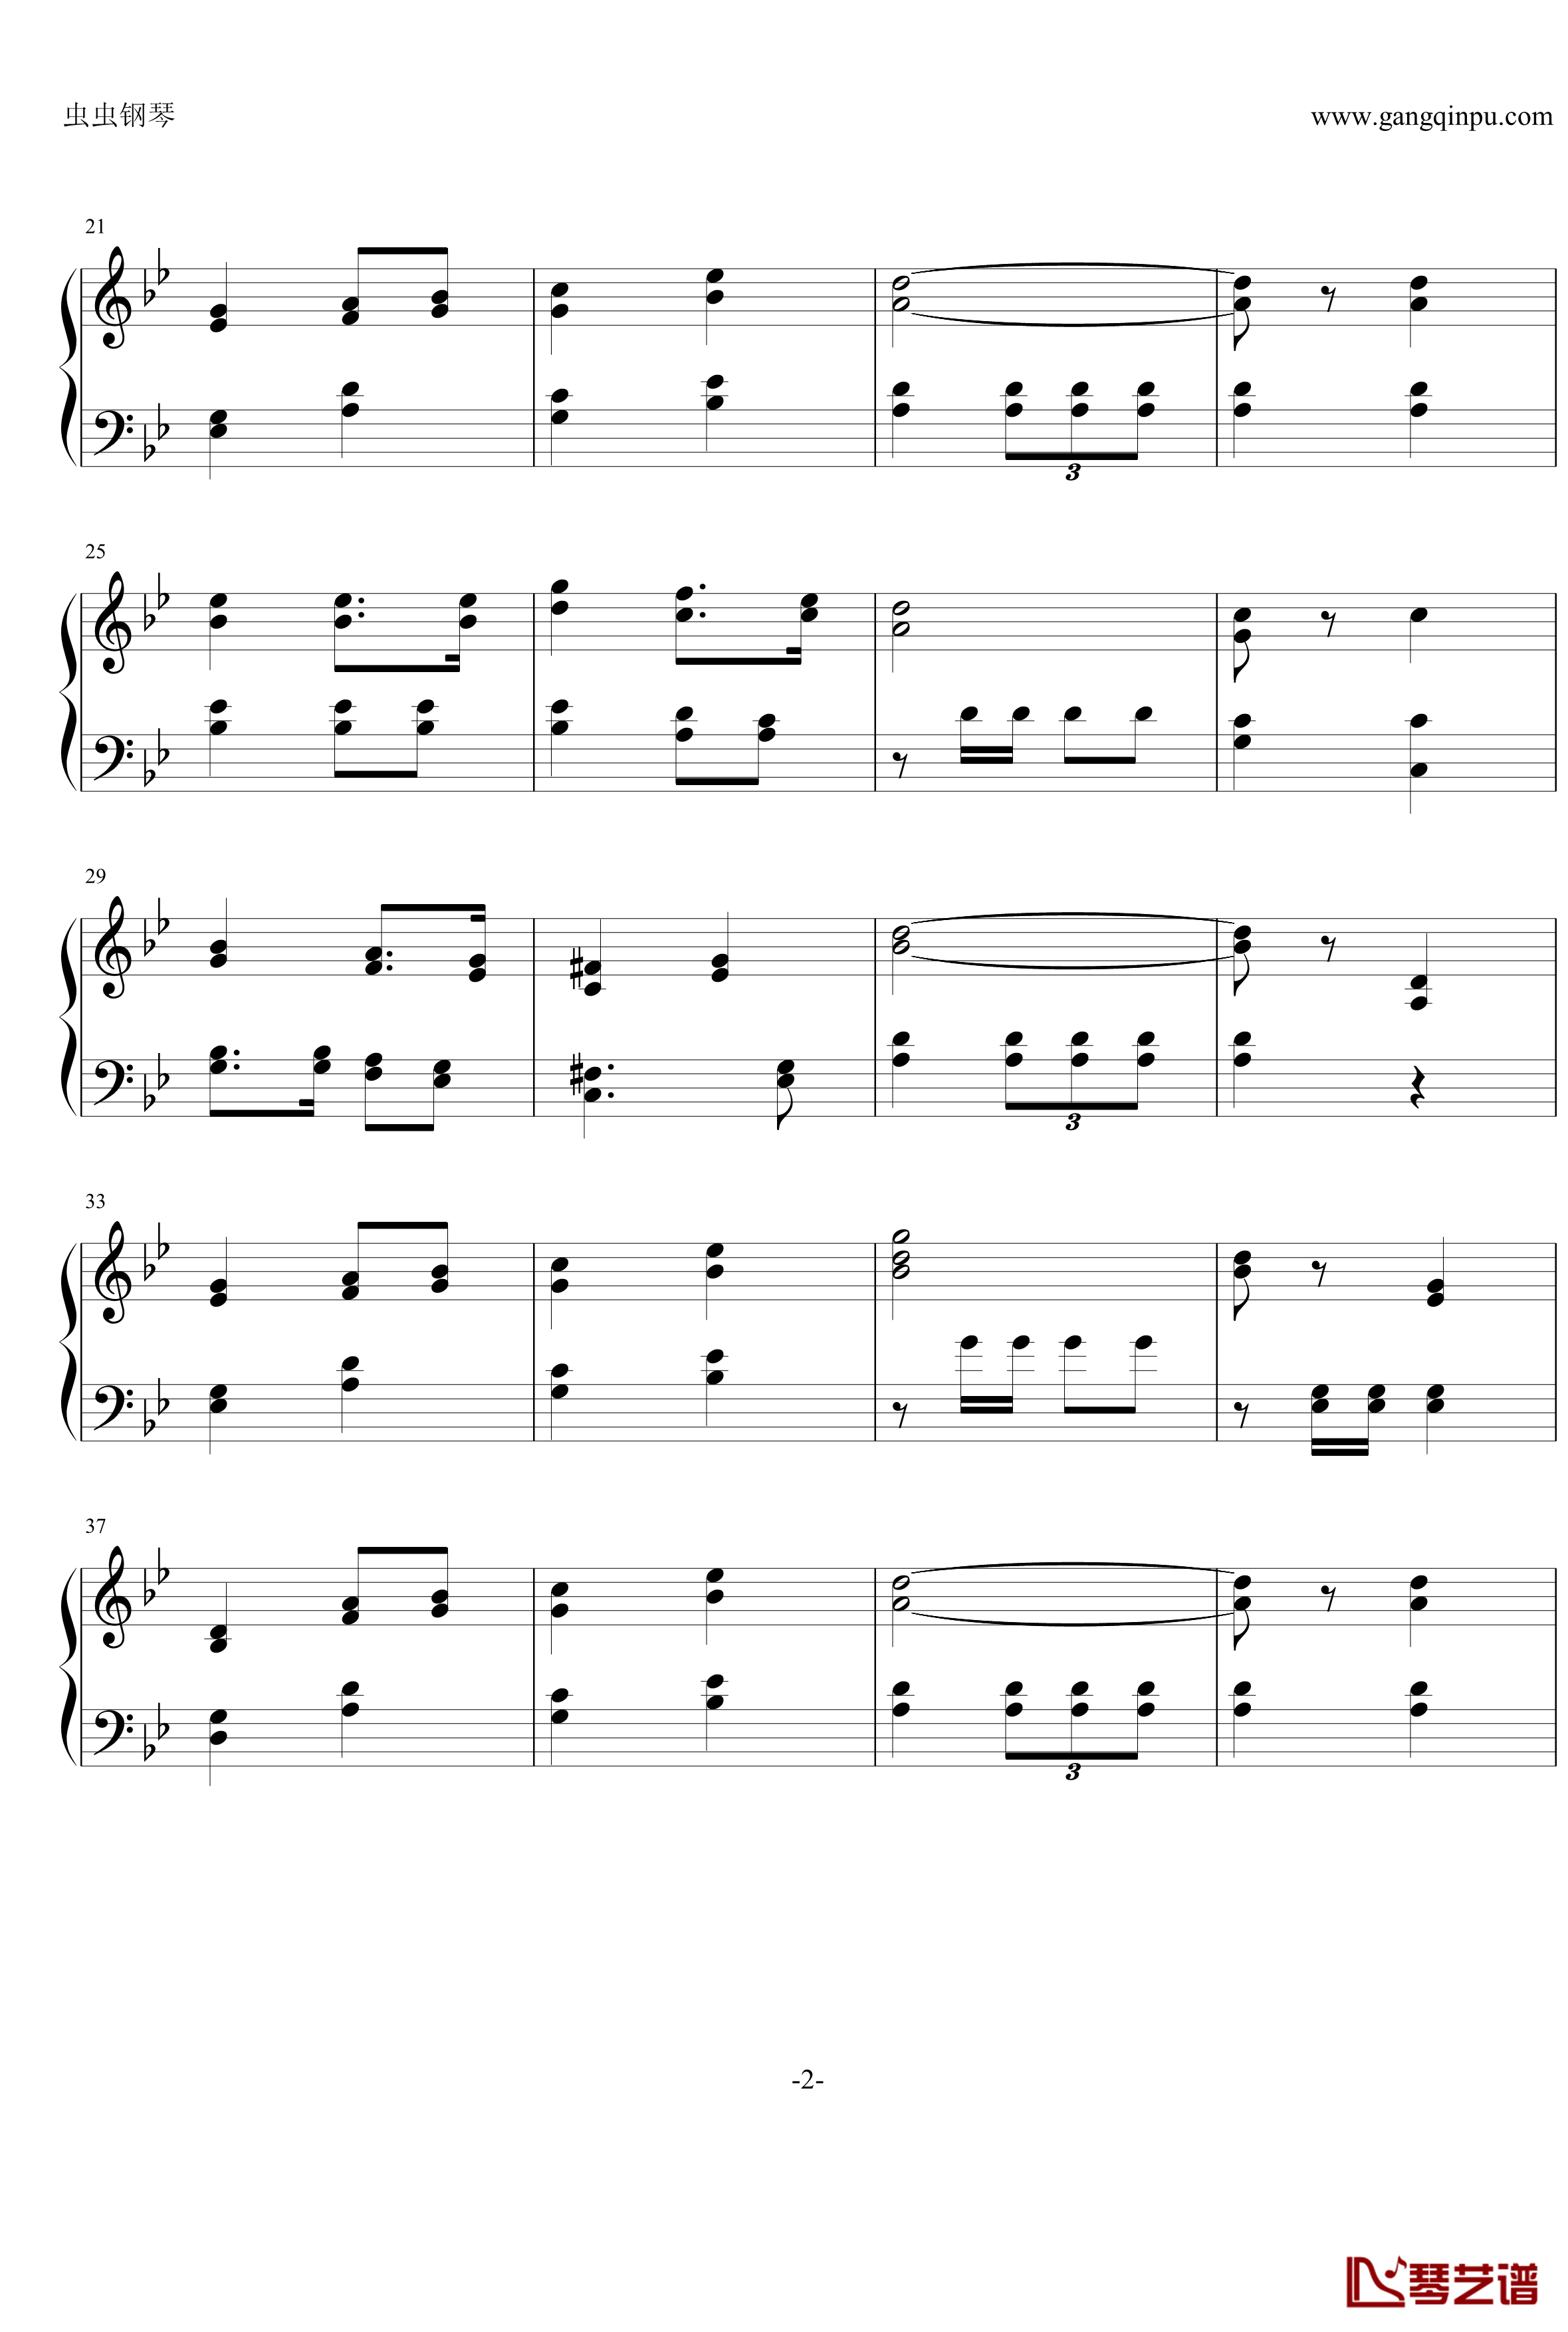 斯图卡之歌钢琴谱-世界名曲